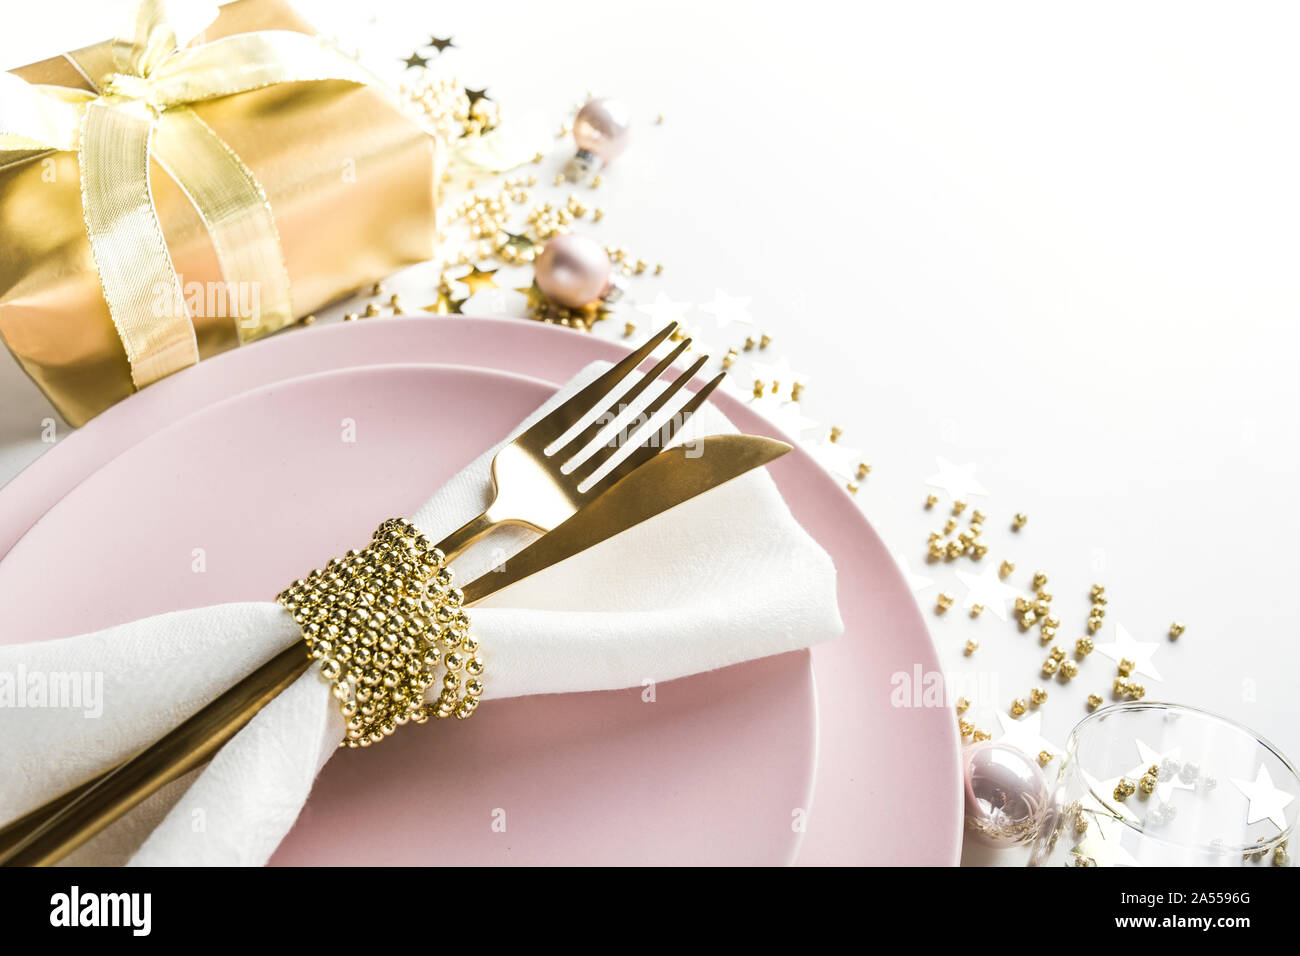 L'élégance de Noël table avec vaisselle, couverts d'or rose sur fond blanc. Vue d'en haut. Le dîner de Noël. Banque D'Images